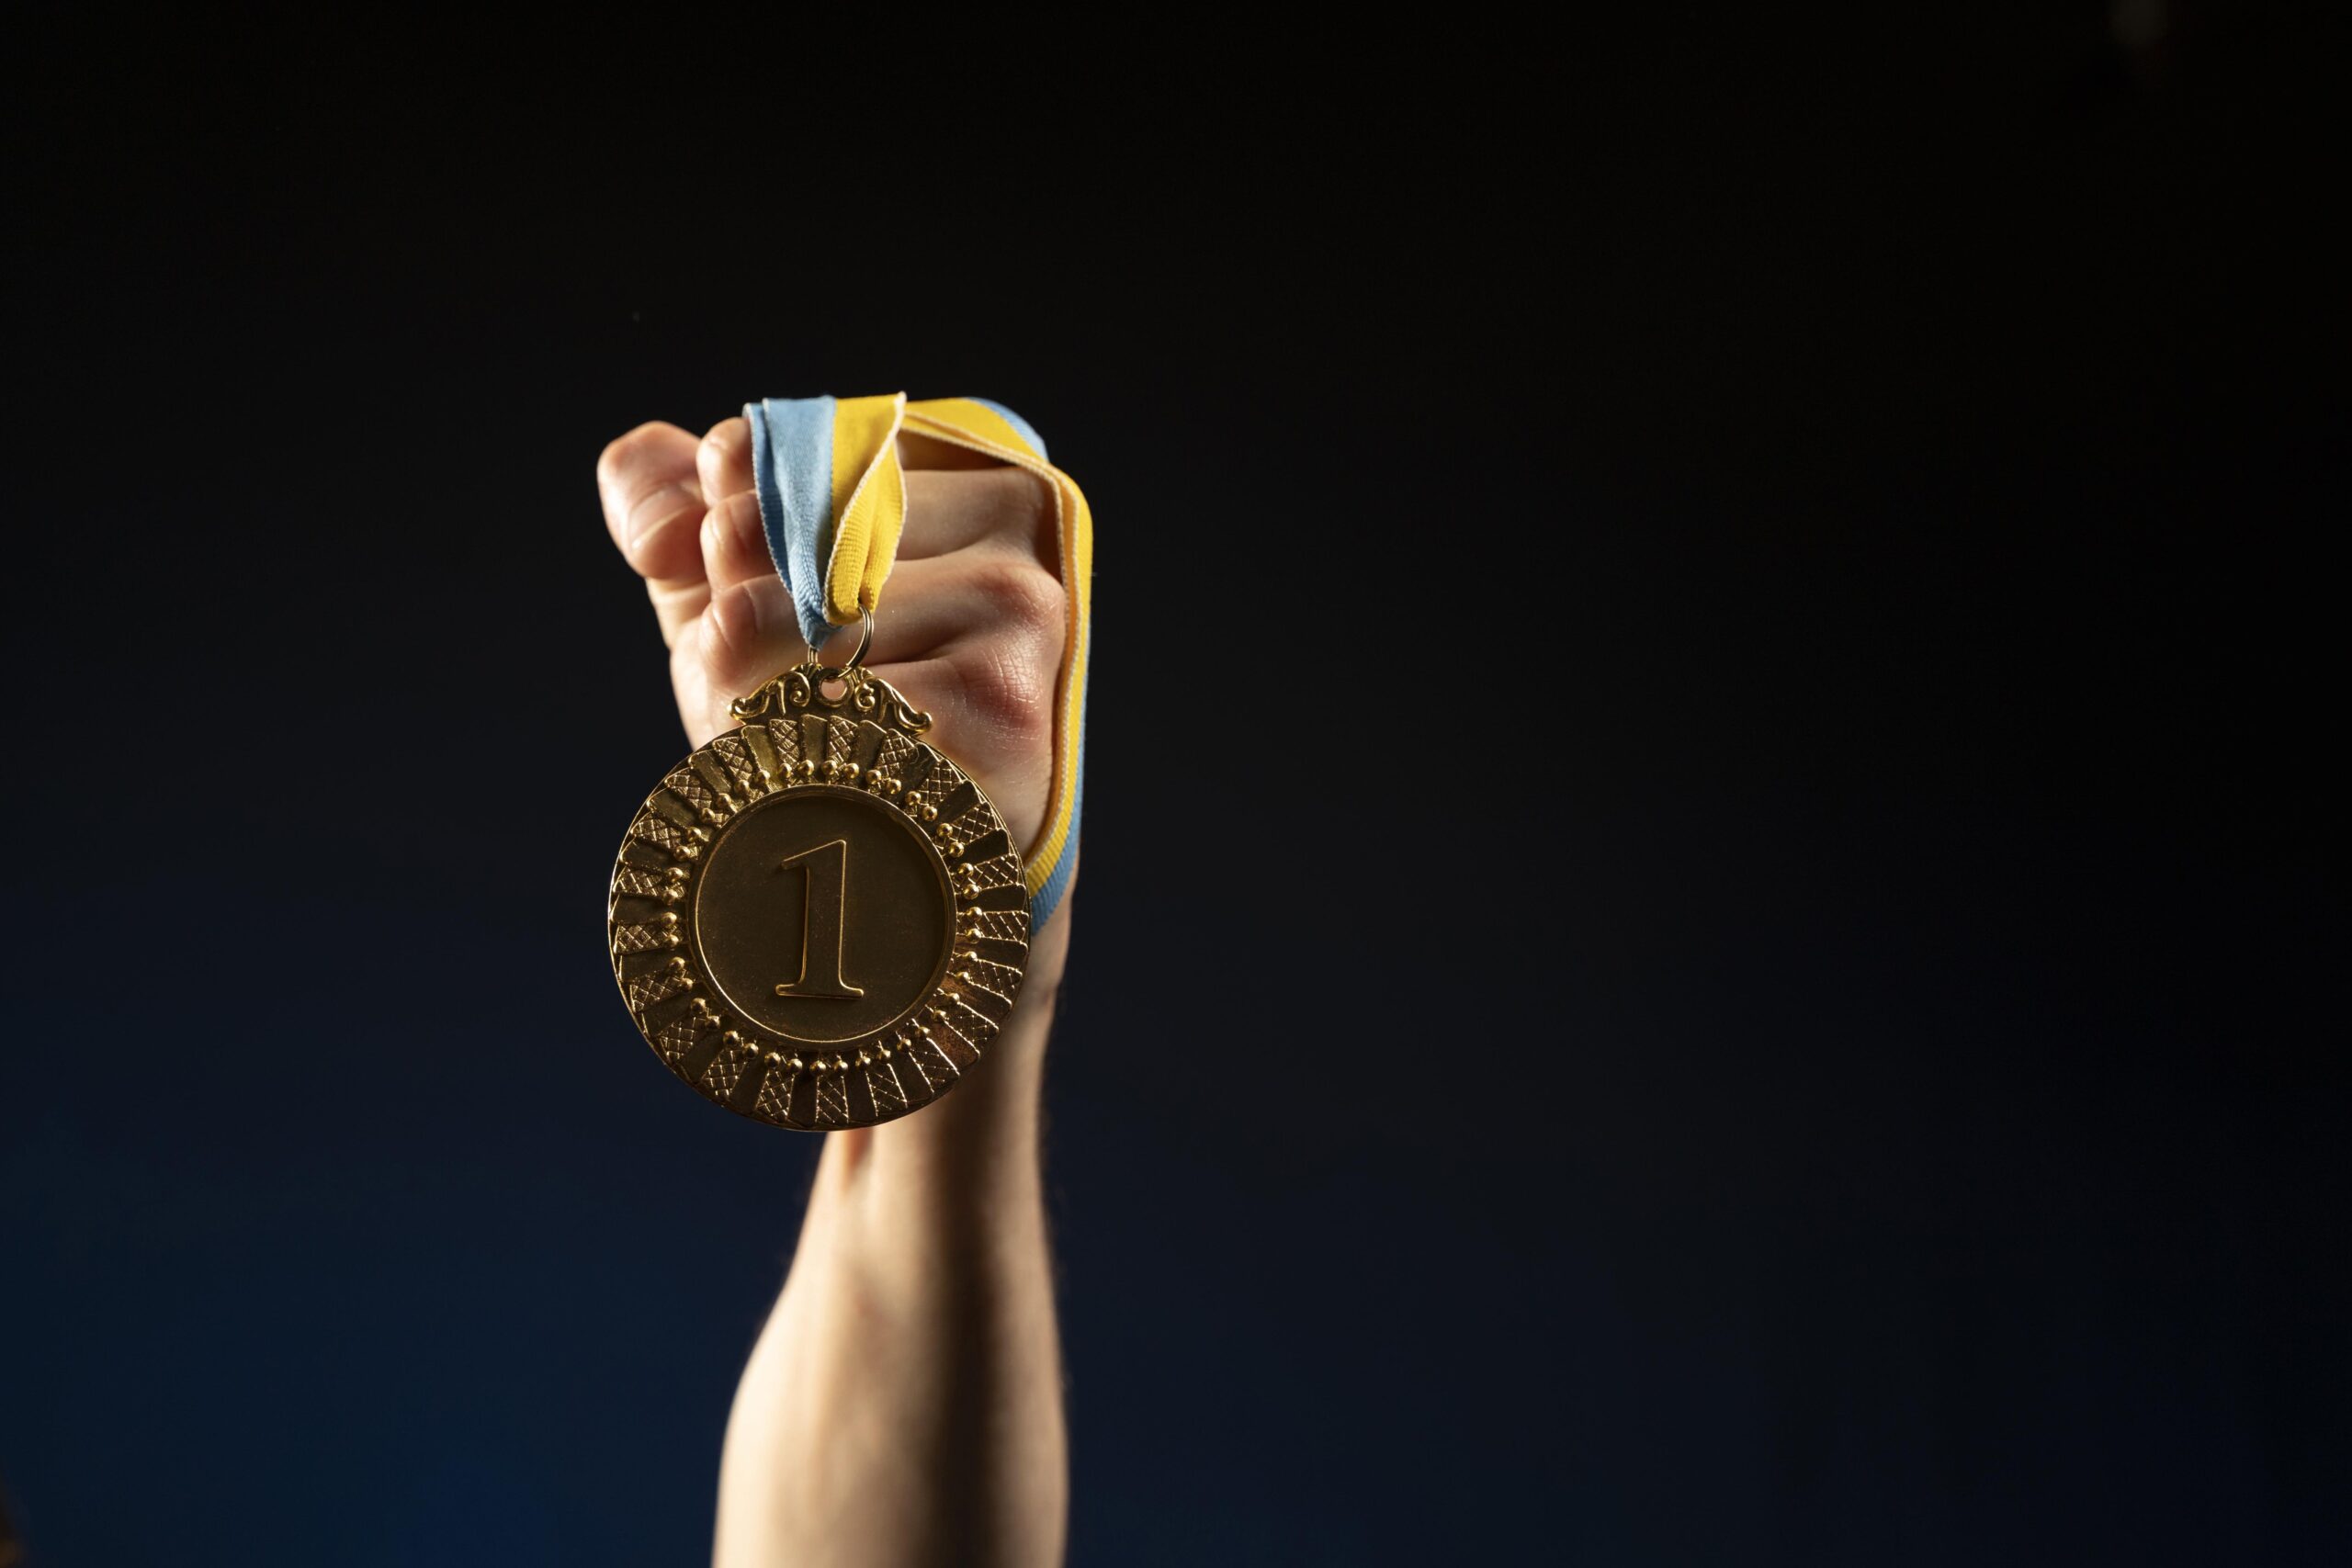 Na zdjęciu widać rękę trzymającą duży złoty medal z numerem jeden